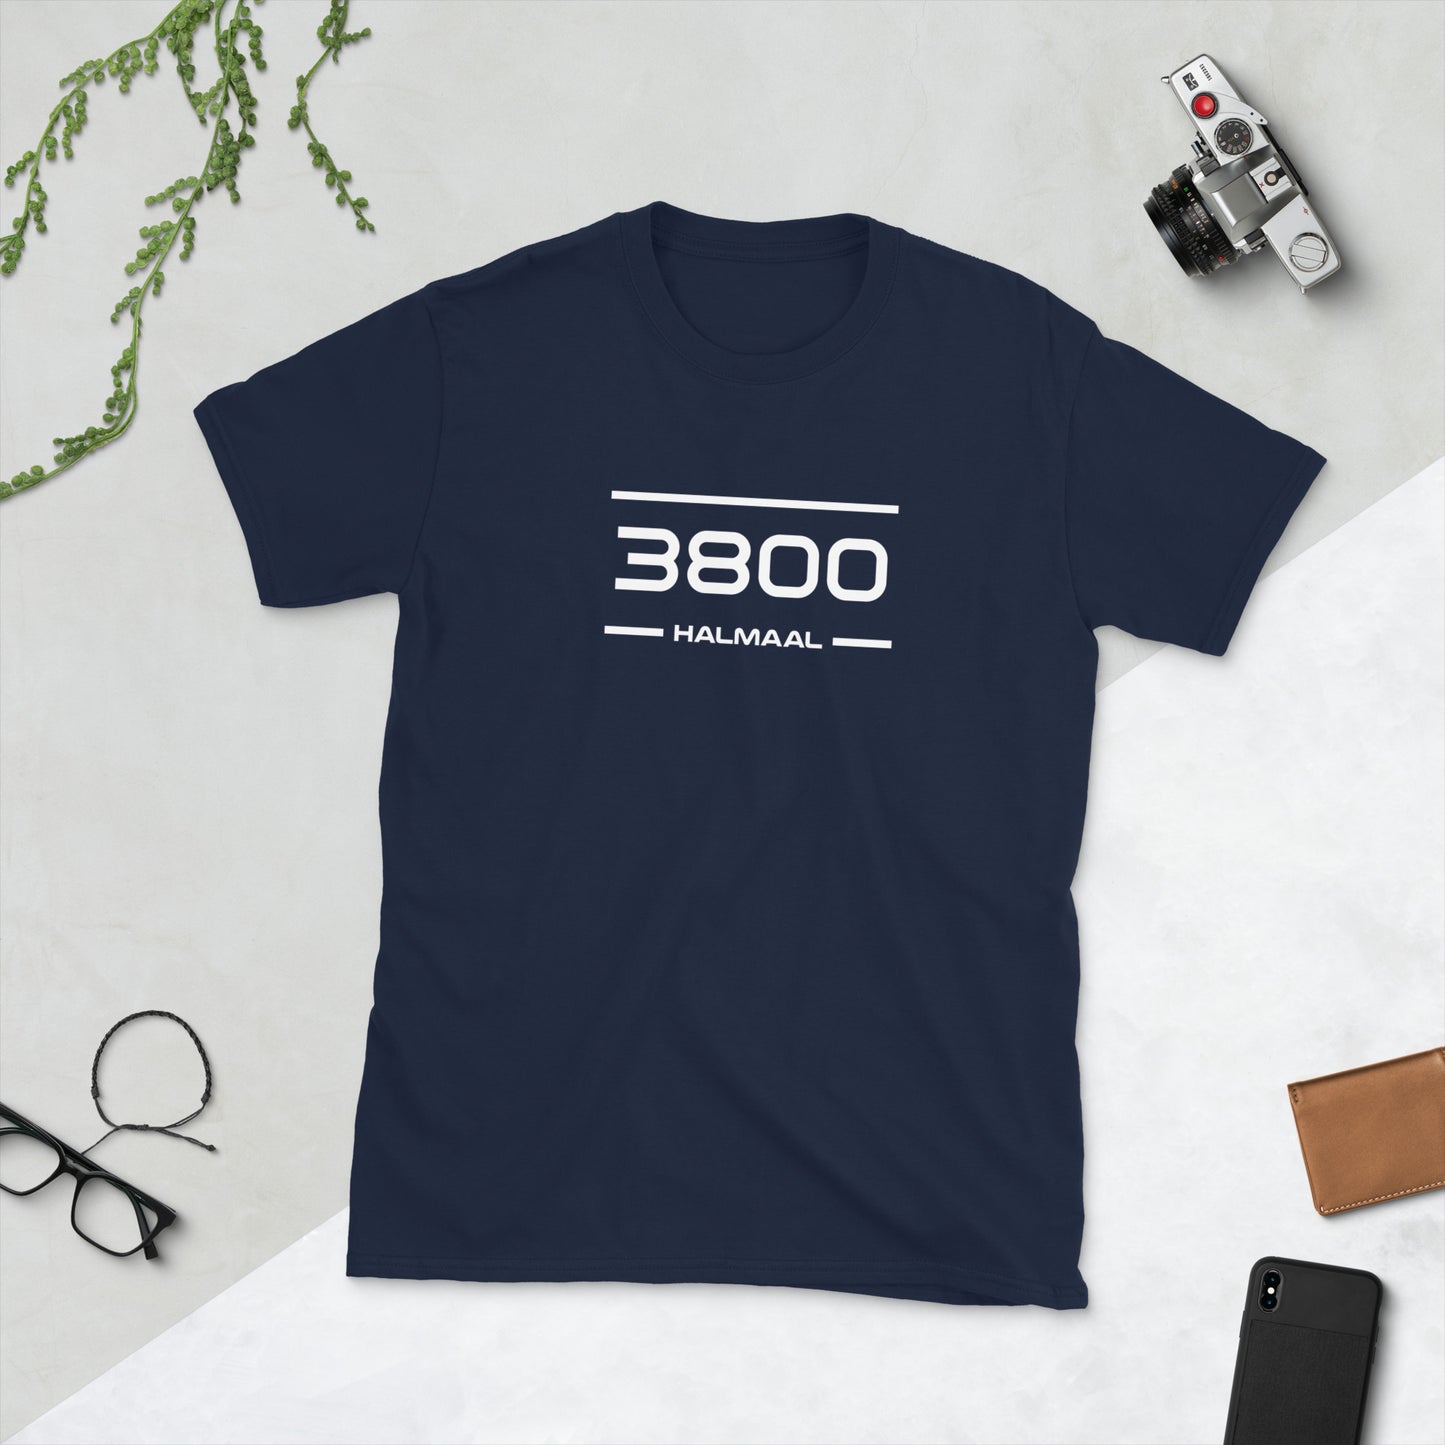 Tshirt - 3800 - Halmaal